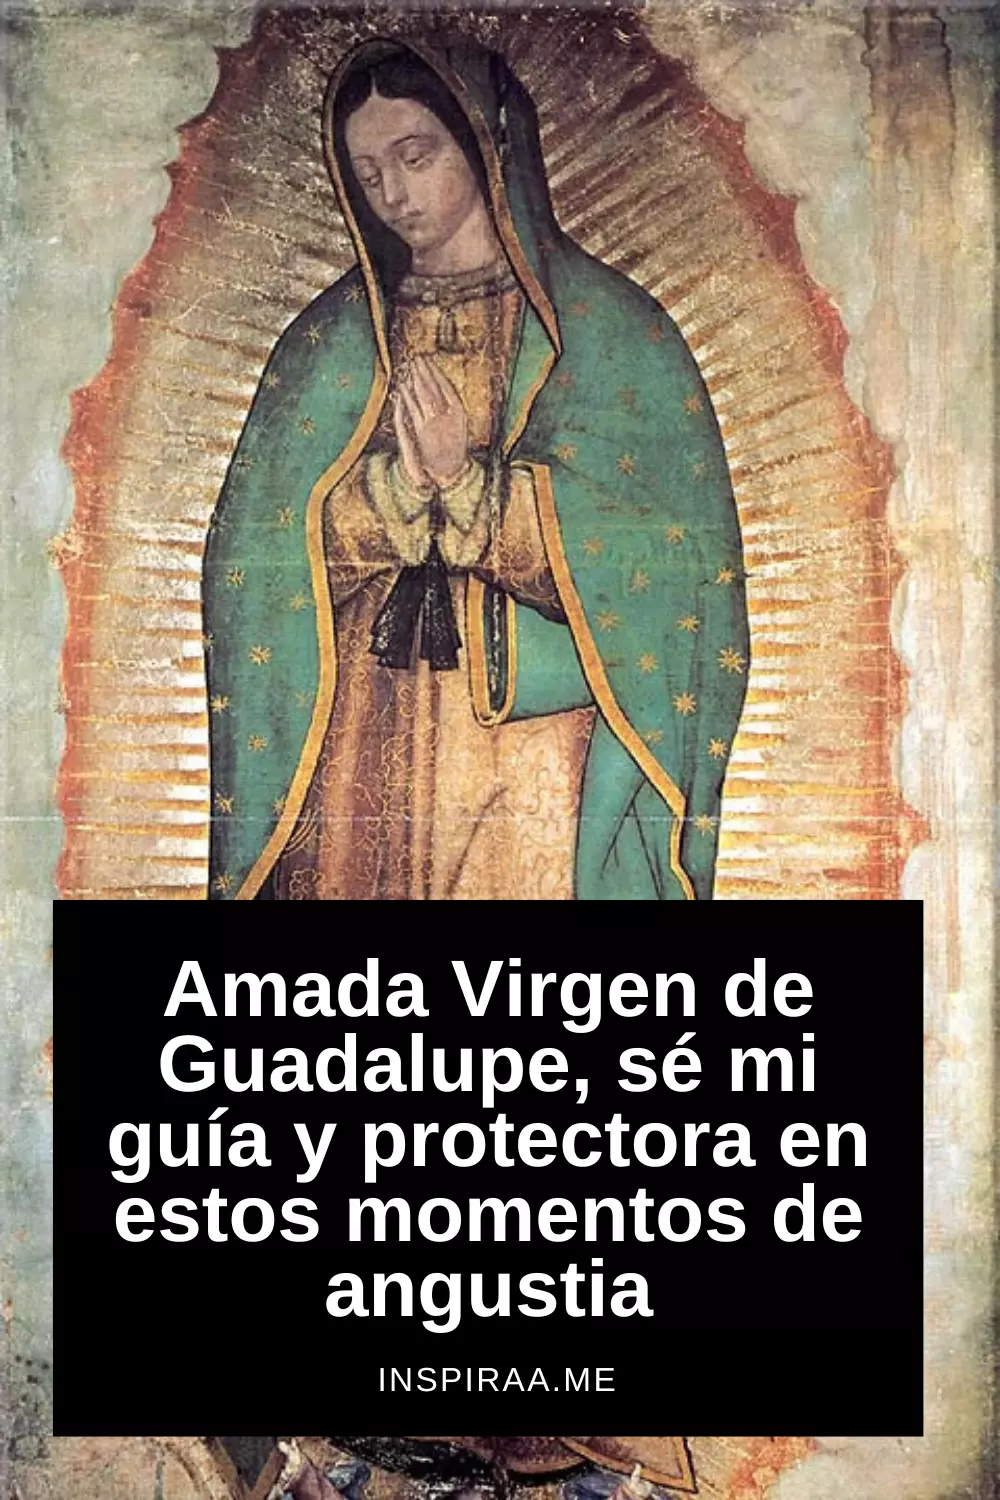 Frases de la Virgen de Guadalupe ¡Celébrala el 12 de diciembre!